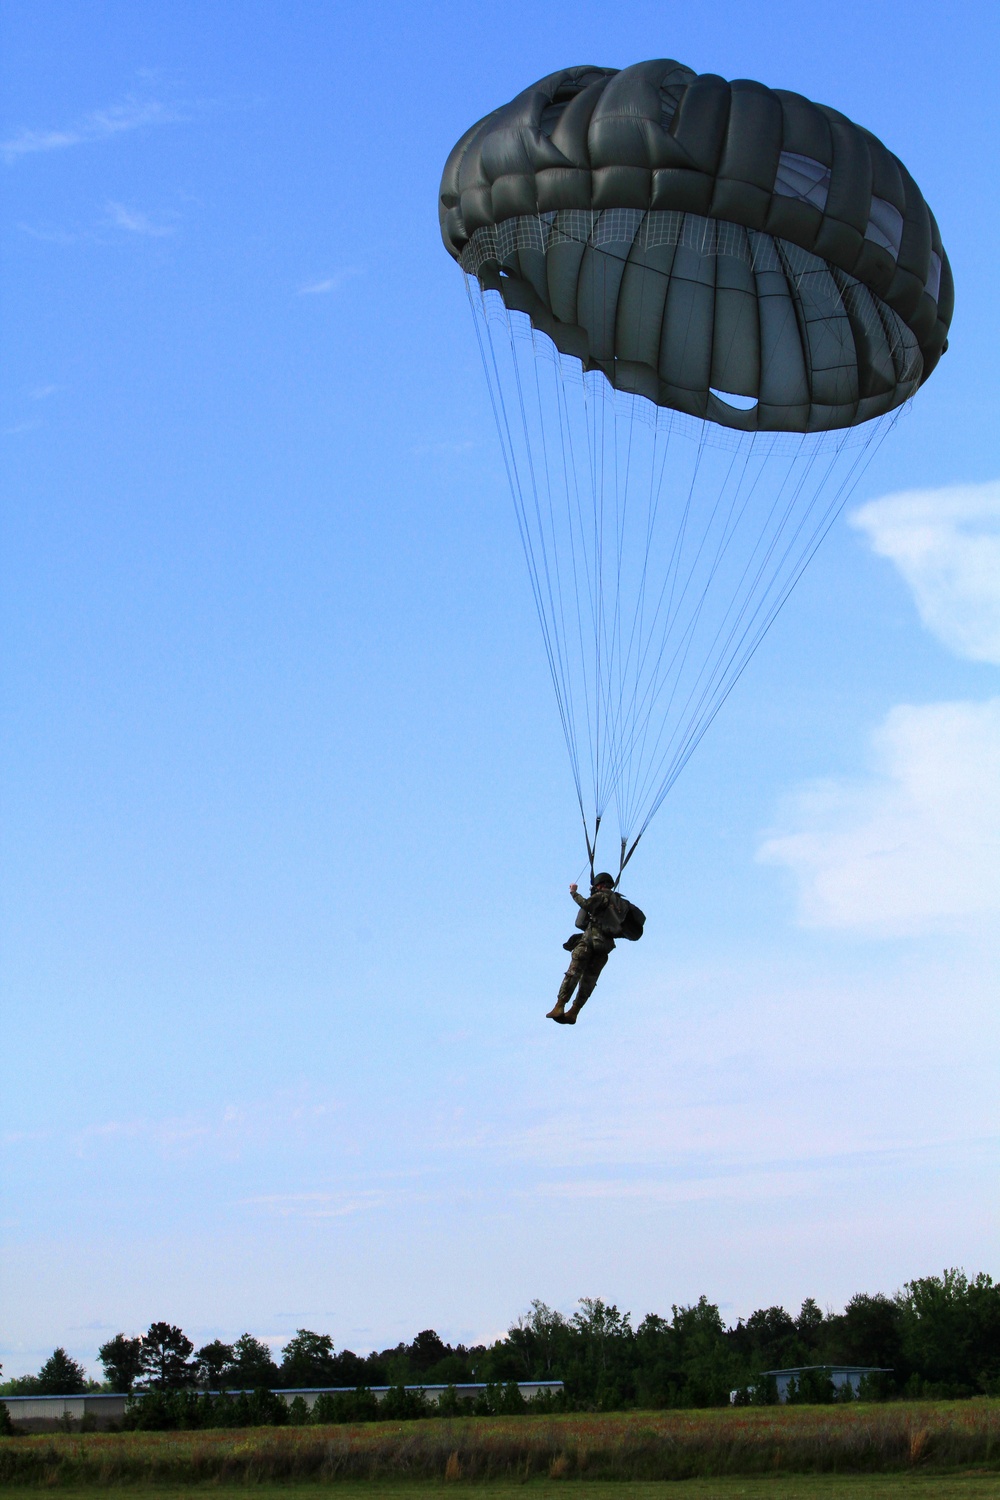 Parachute Operations Mishap Prevention Orientation Course